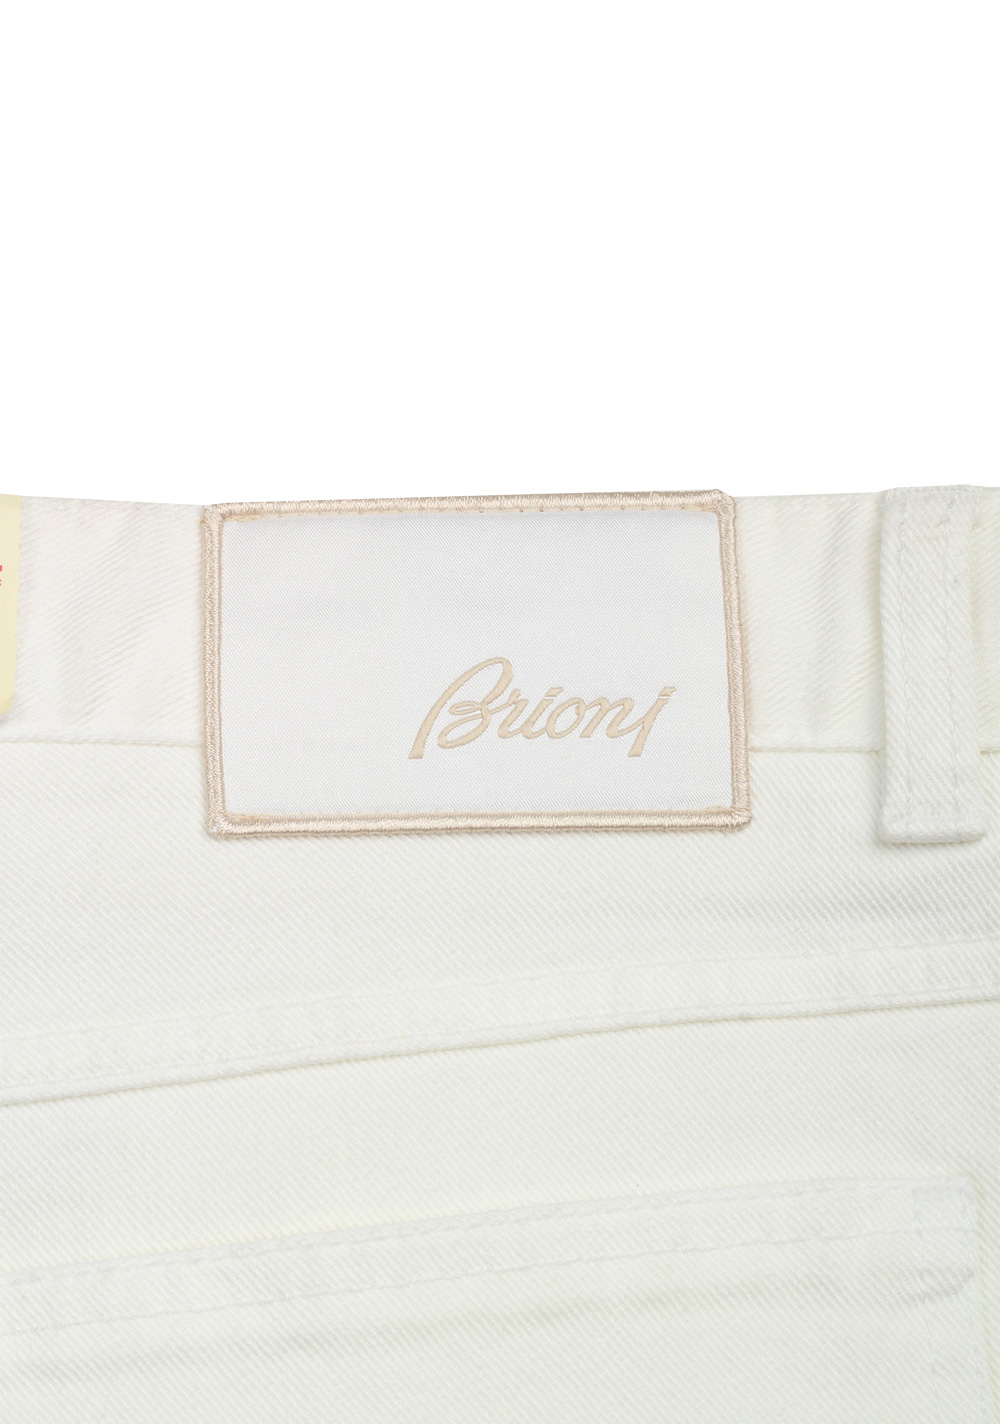 Brioni White Jeans Trousers Size 56 / 40 U.S. | Costume Limité